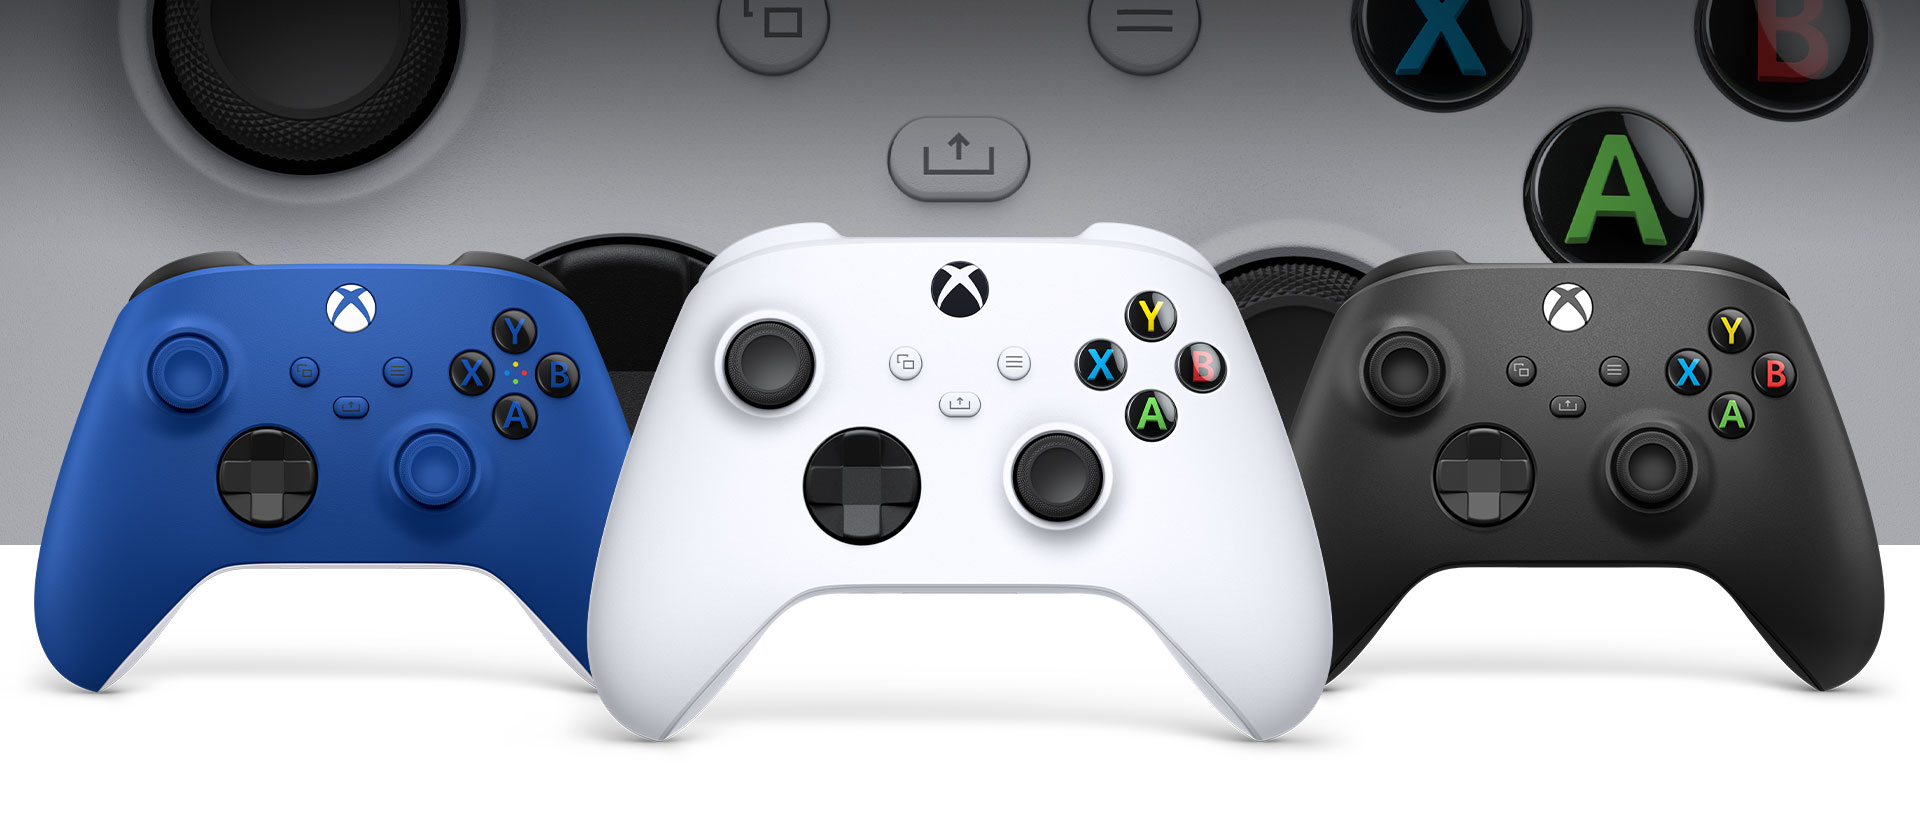 Kontroler Xbox Robot z przodu z kontrolerami w kolorach carbon i shock blue obok niego